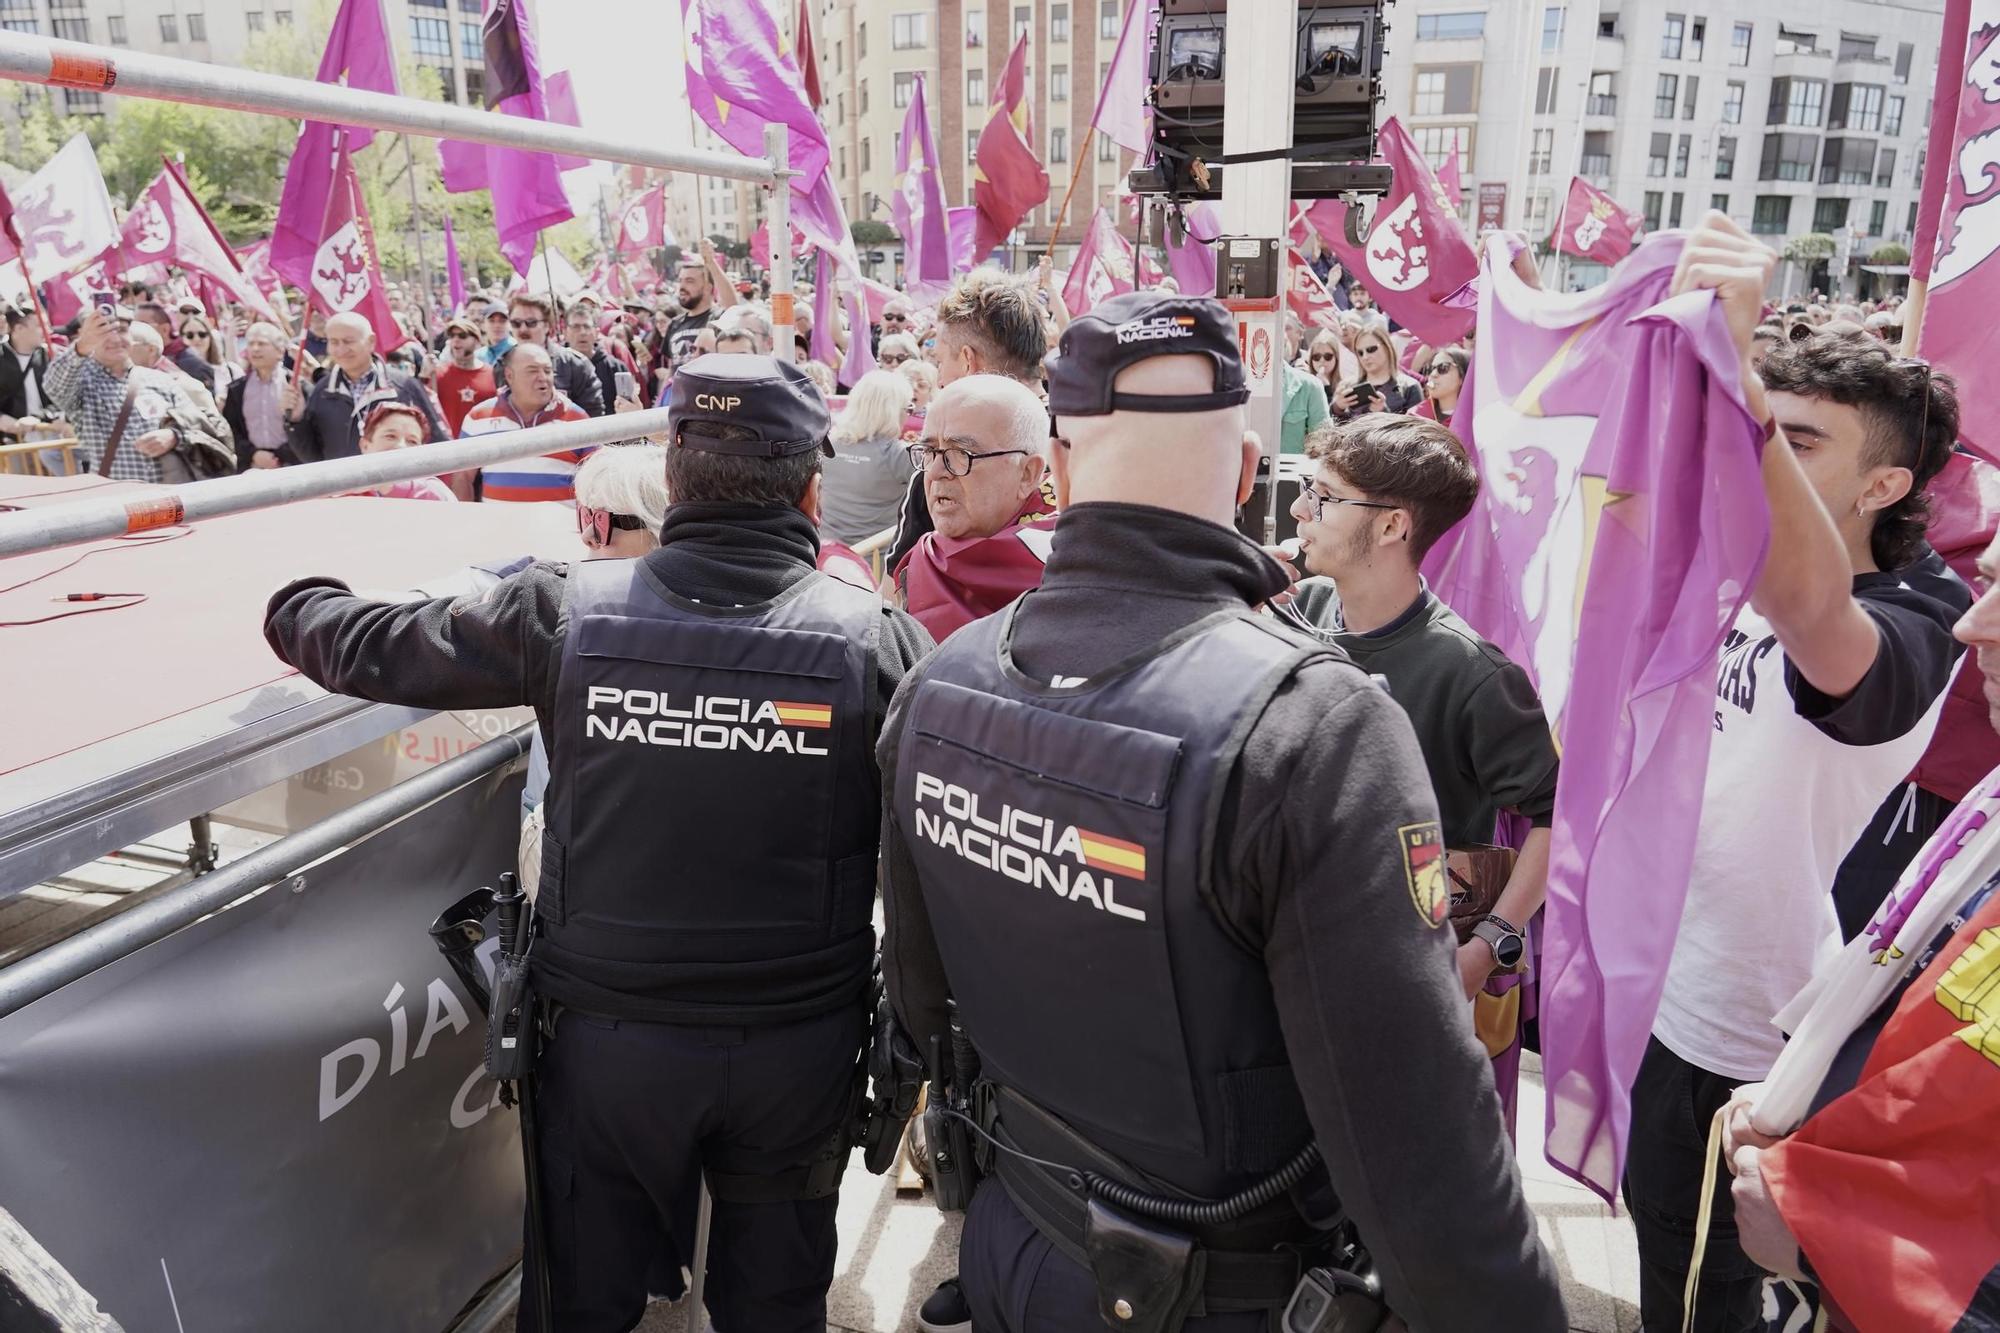 GALERÍA: Así han sido las protestas en León que han obligado a suspender los actos por el Día de la Comunidad